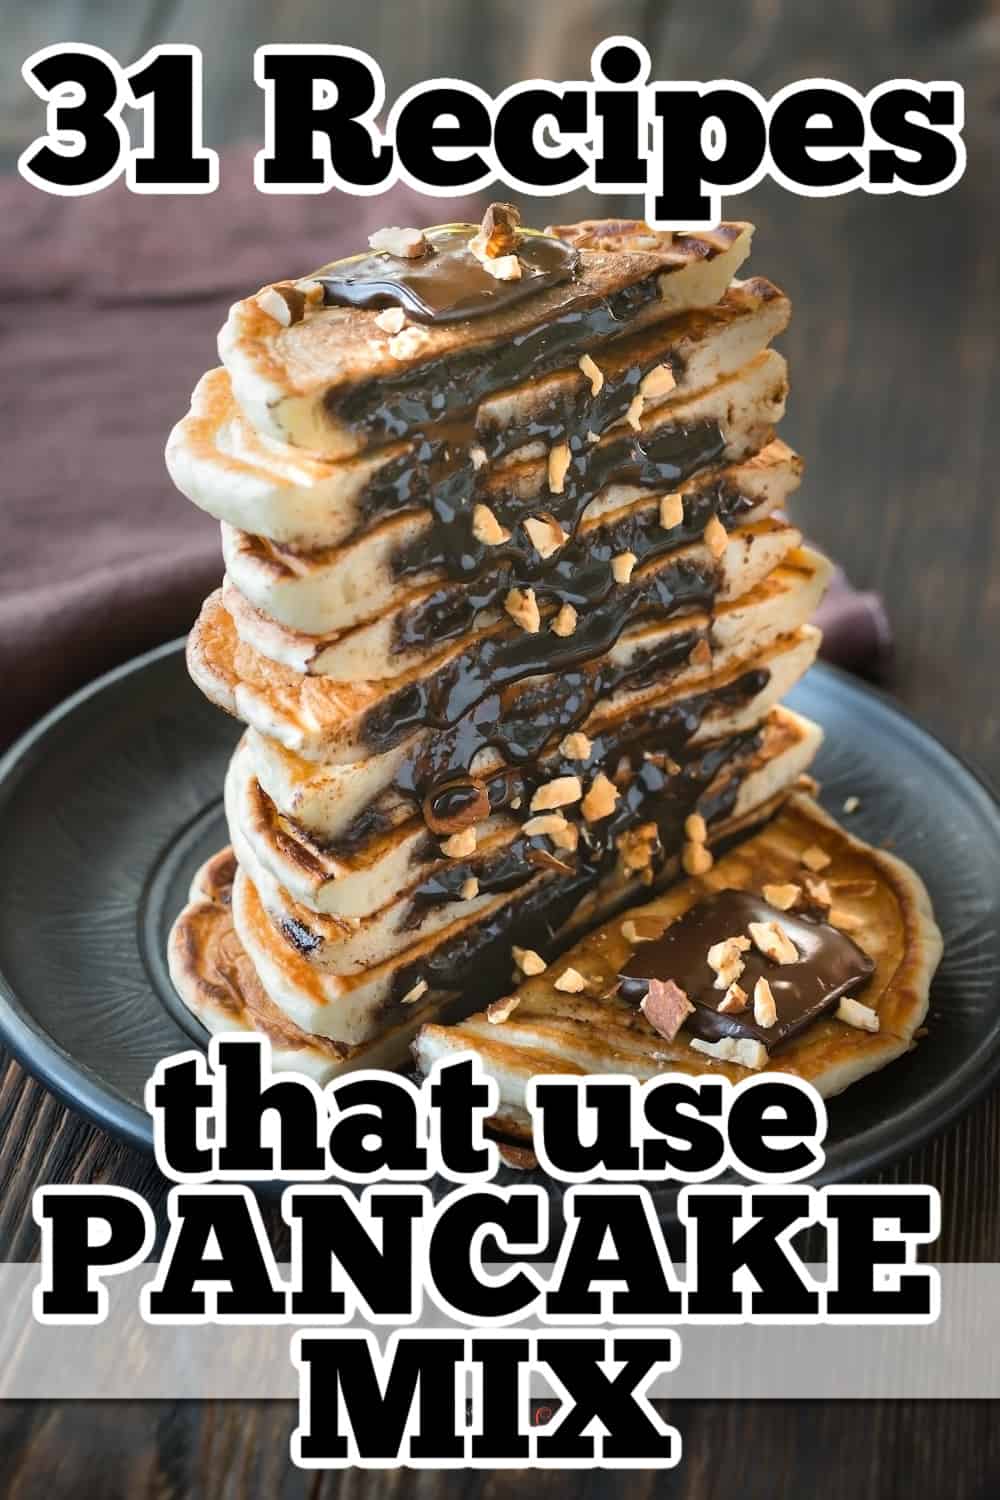 31 recipes that use pancake mix.